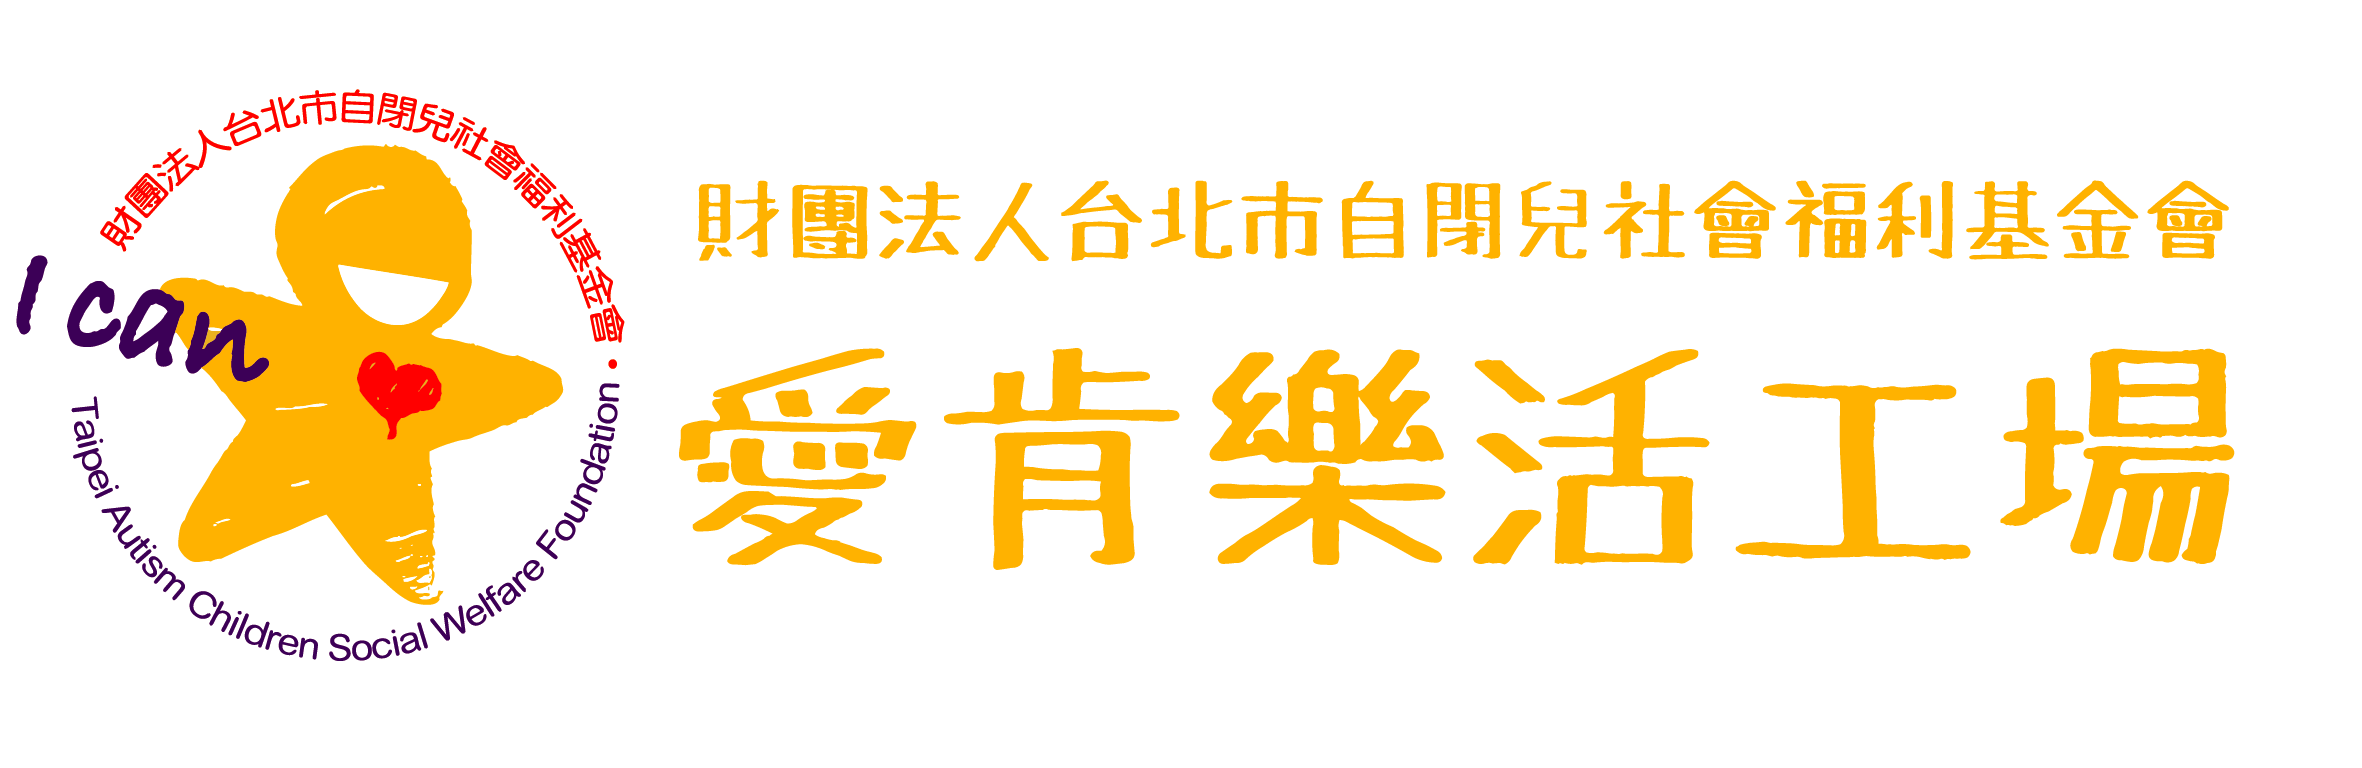 財團法人台北市自閉兒社會福利基金會附設愛肯樂活工場